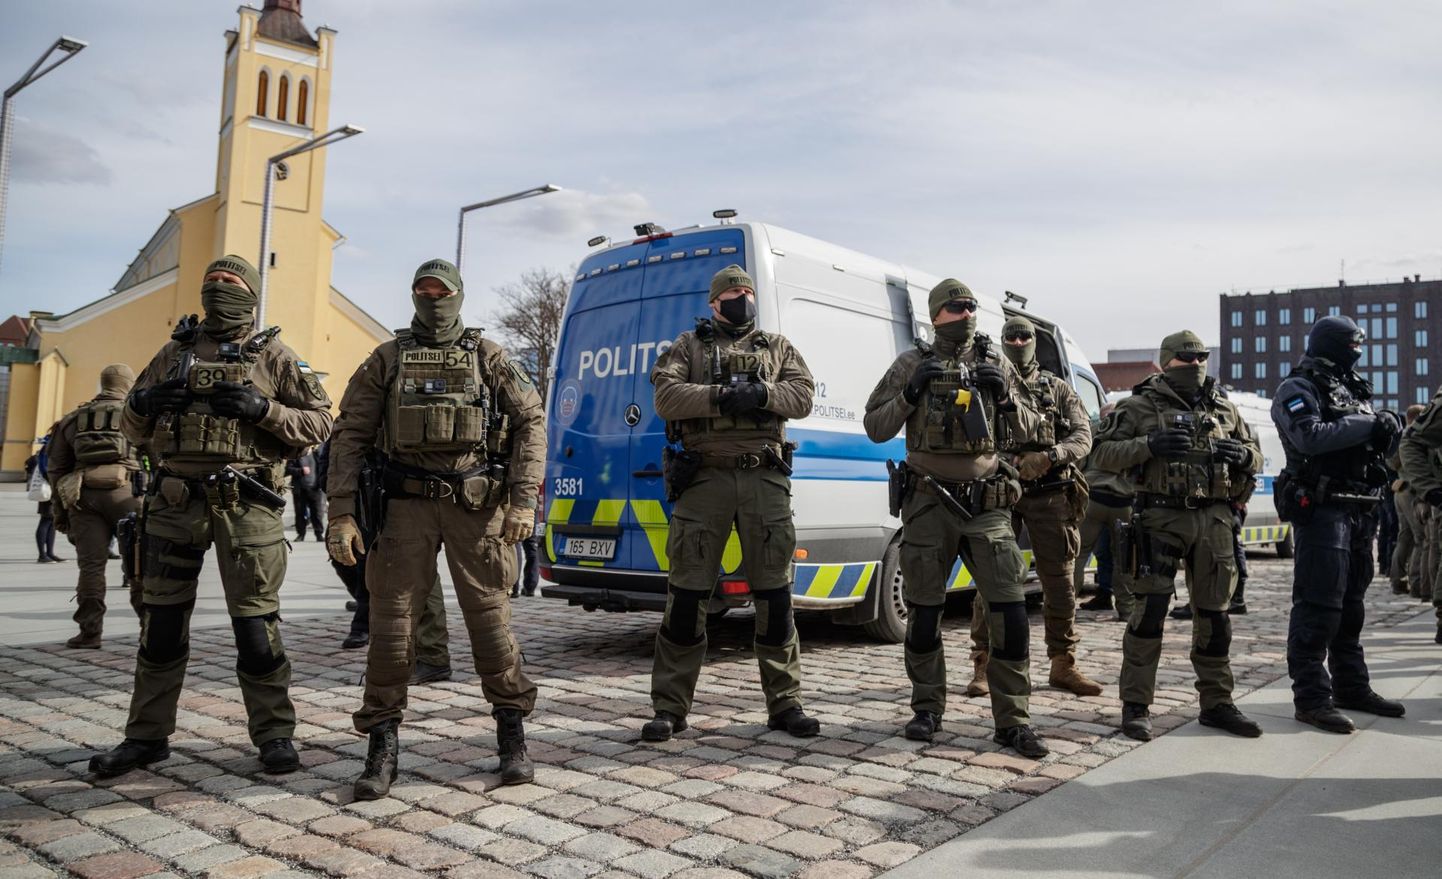 Tallinnas inimesi noaga rünnanud meest aitas taltsutada kaaskodanik, kuid vaja läks ka kiirreageerijate sekkumist. Foto on illustratiivne.